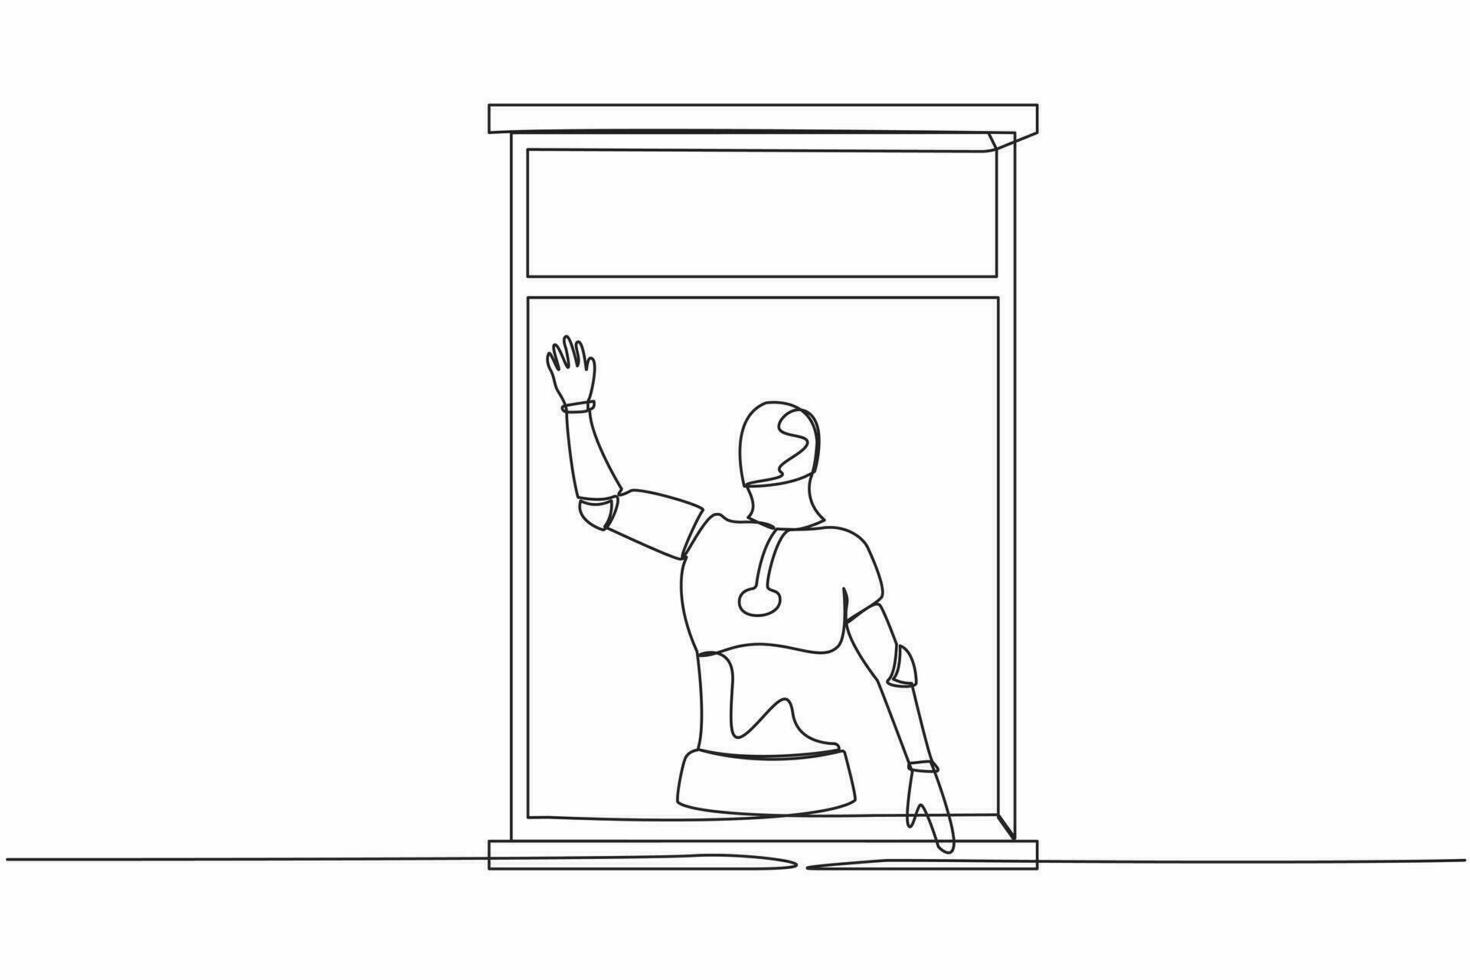 kontinuerlig ett linje teckning robot vinka på fönster som se tycka om till hälsa eller inbjudan vänner till komma i. humanoid robot cybernetiska organism. framtida robotisk. enda linje dra design vektor illustration